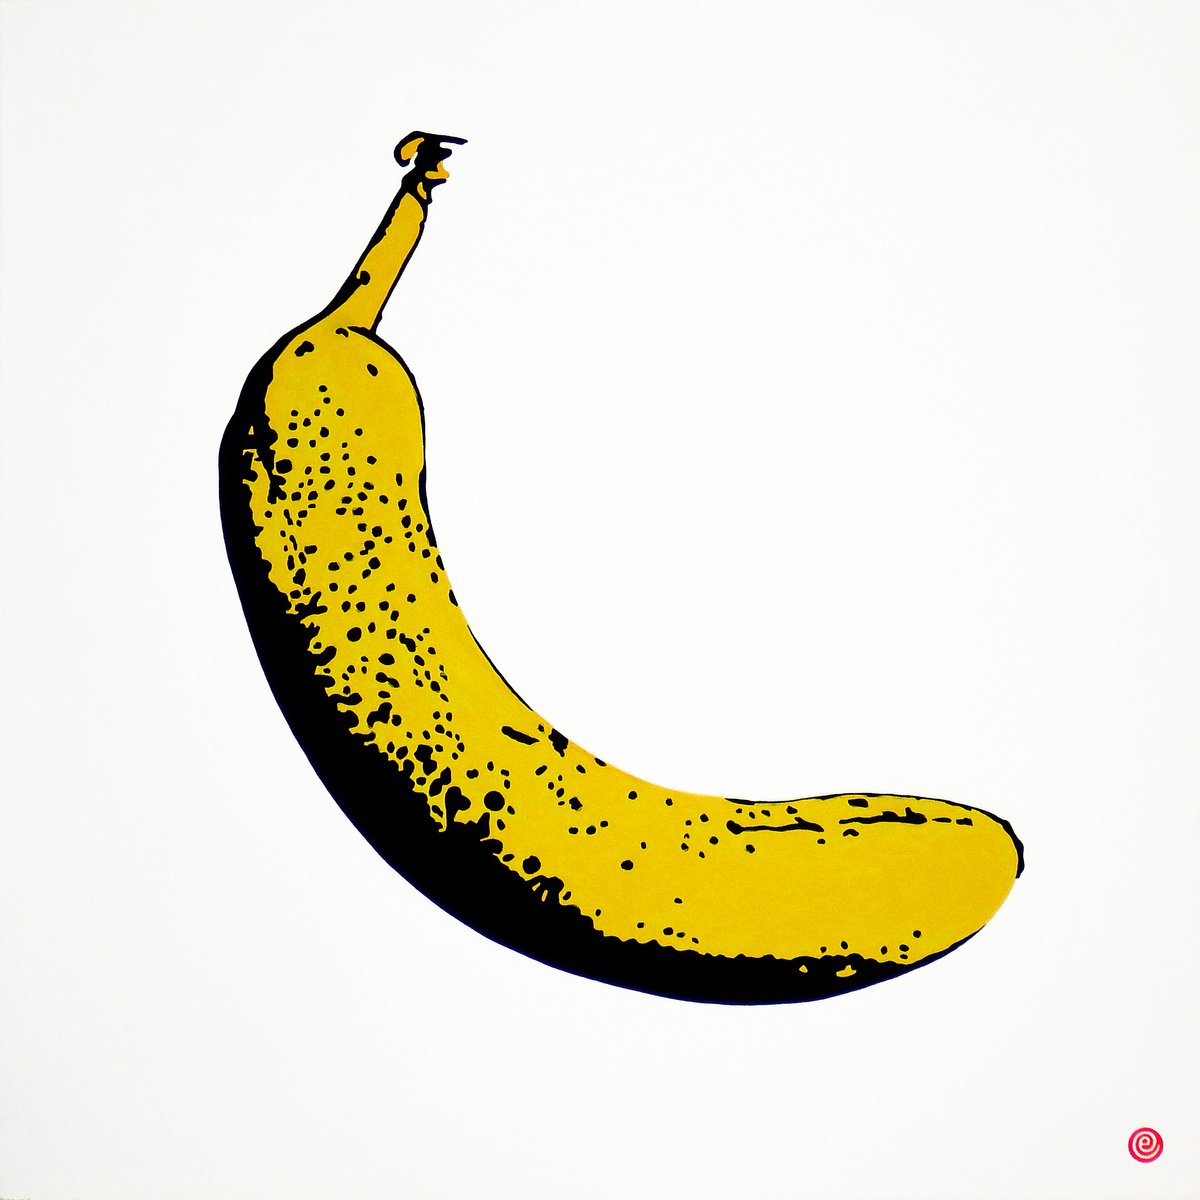 Banana by Antti Eklund